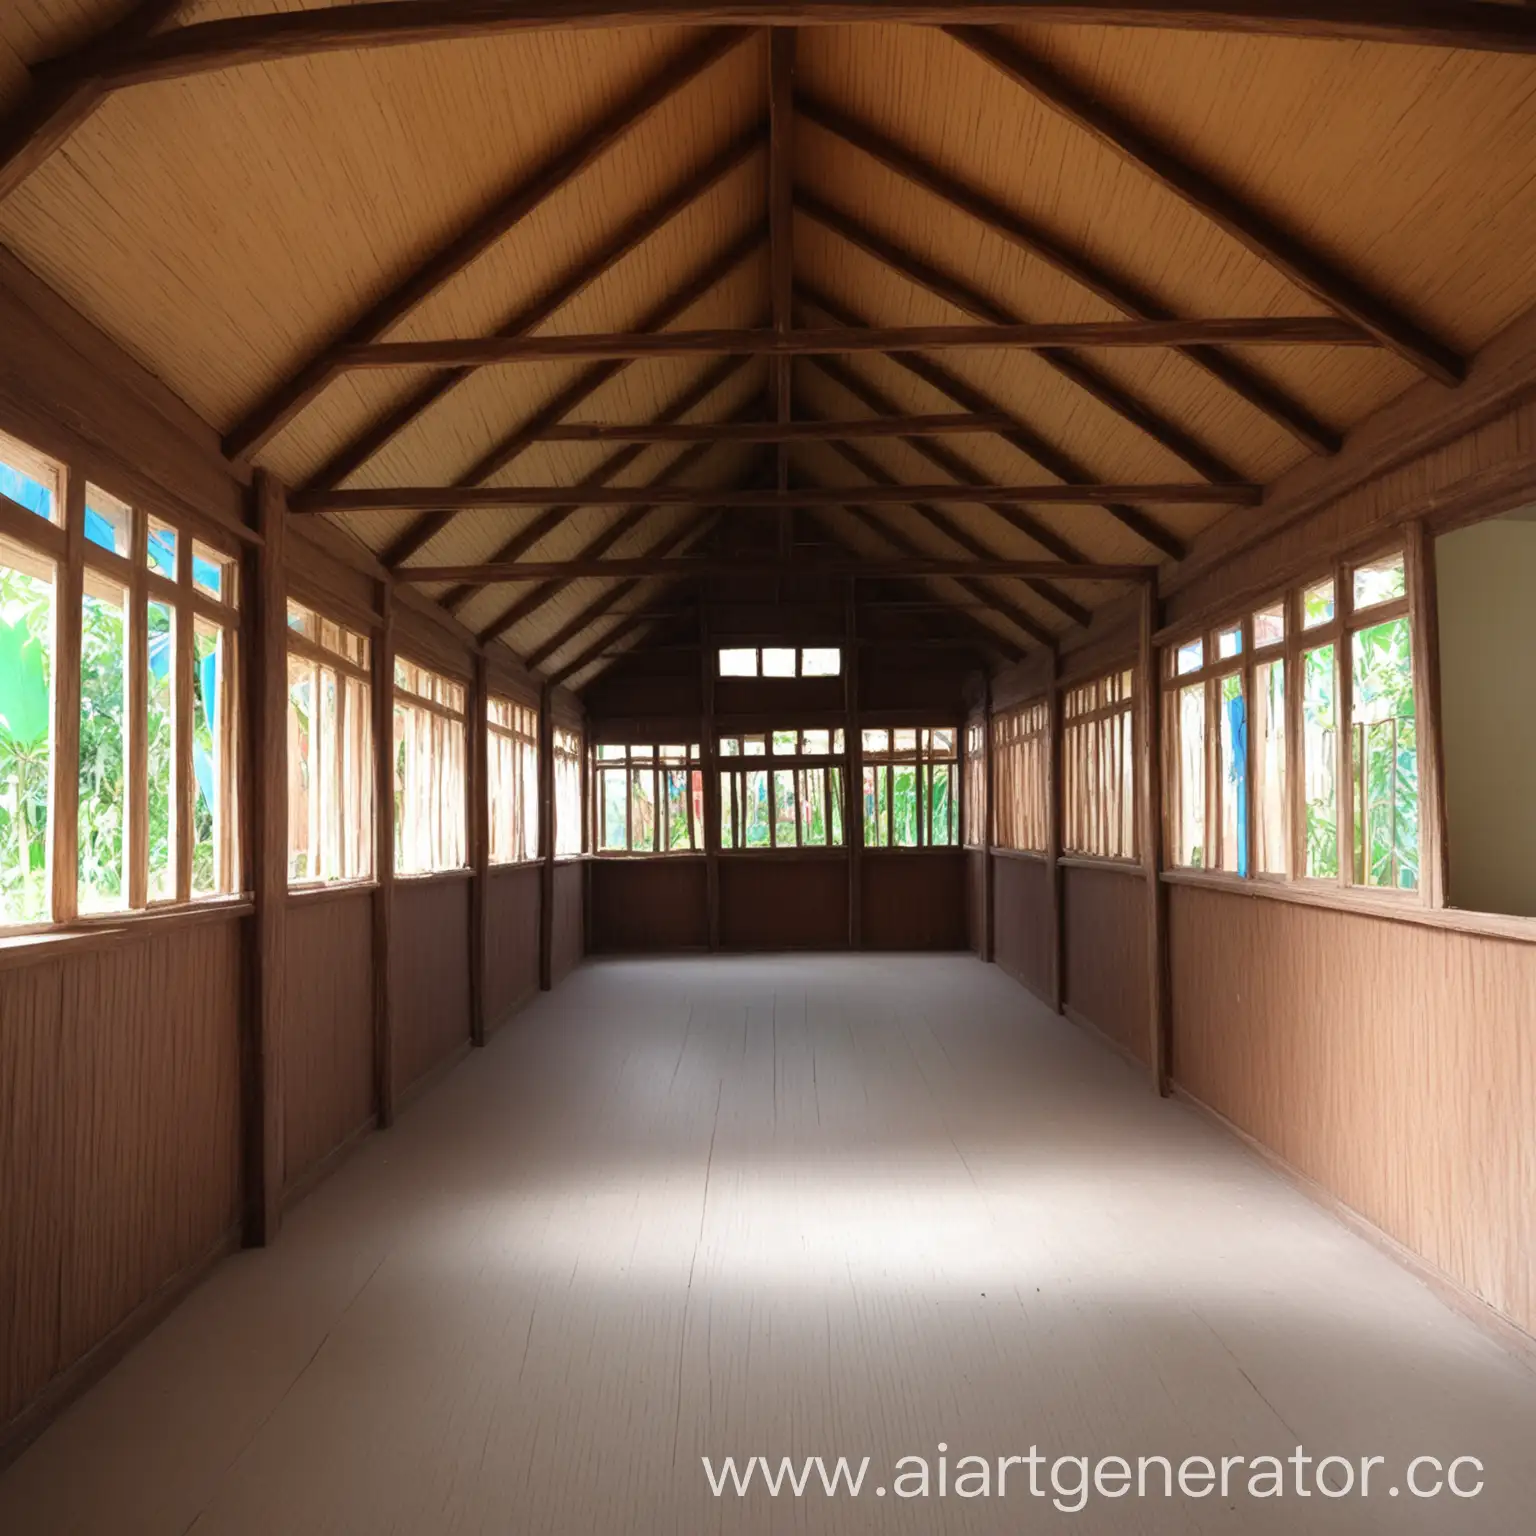 фото изнутри строго деревянного здания детского дома